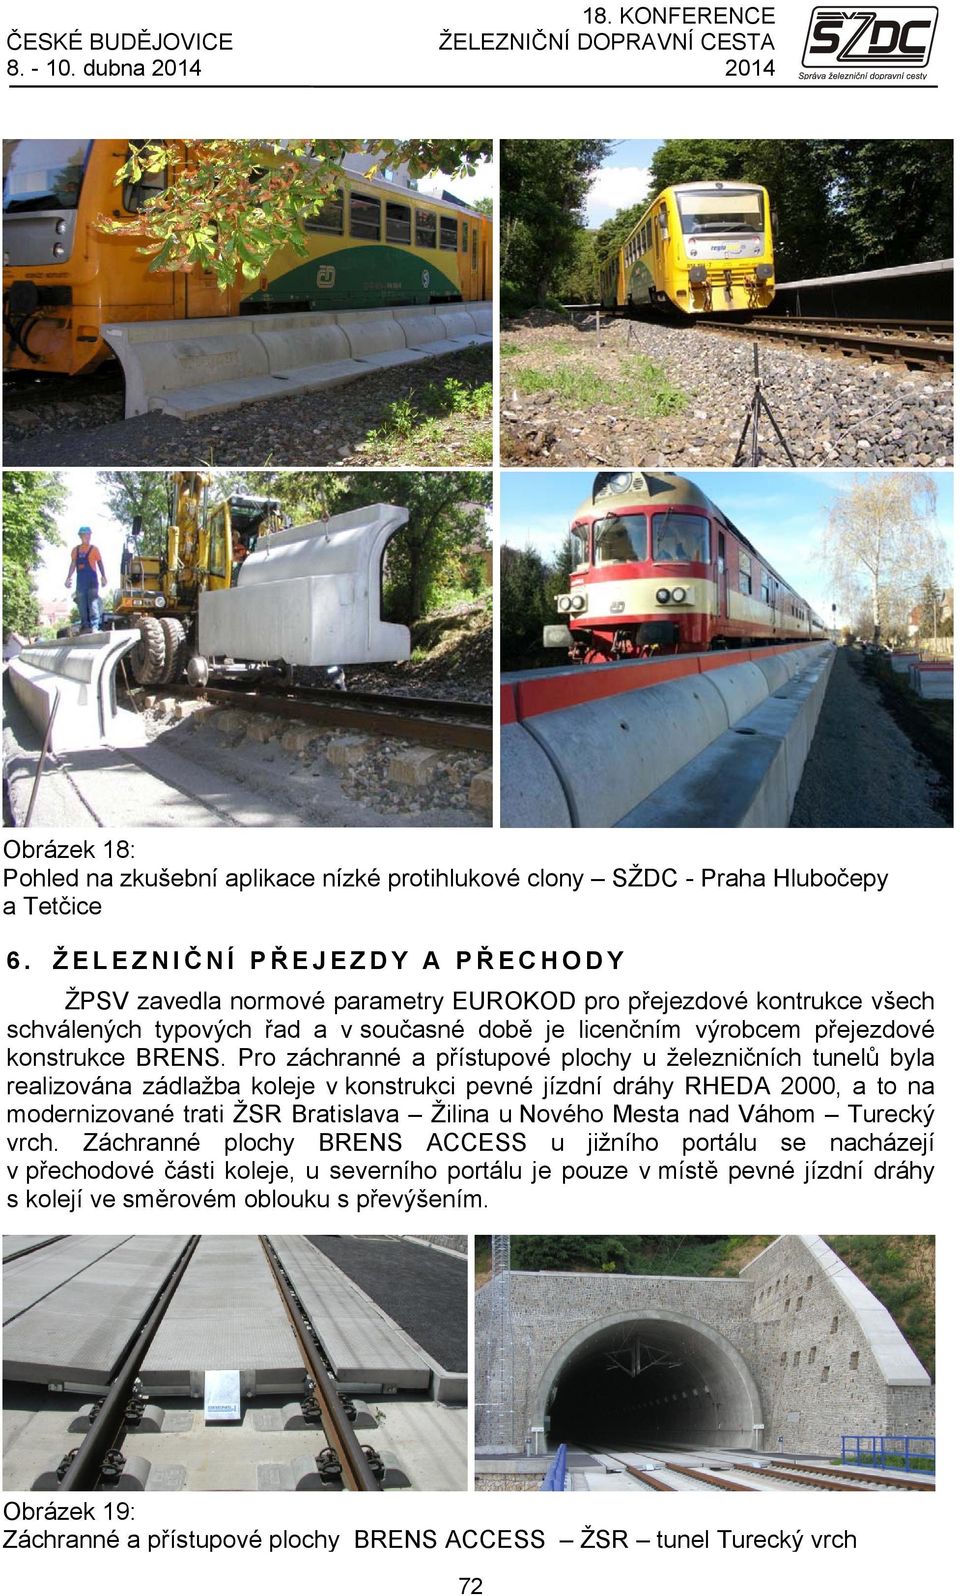 Pro záchranné a přístupové plochy u železničních tunelů byla realizována zádlažba koleje v konstrukci pevné jízdní dráhy RHEDA 2000, a to na modernizované trati ŽSR Bratislava Žilina u Nového Mesta